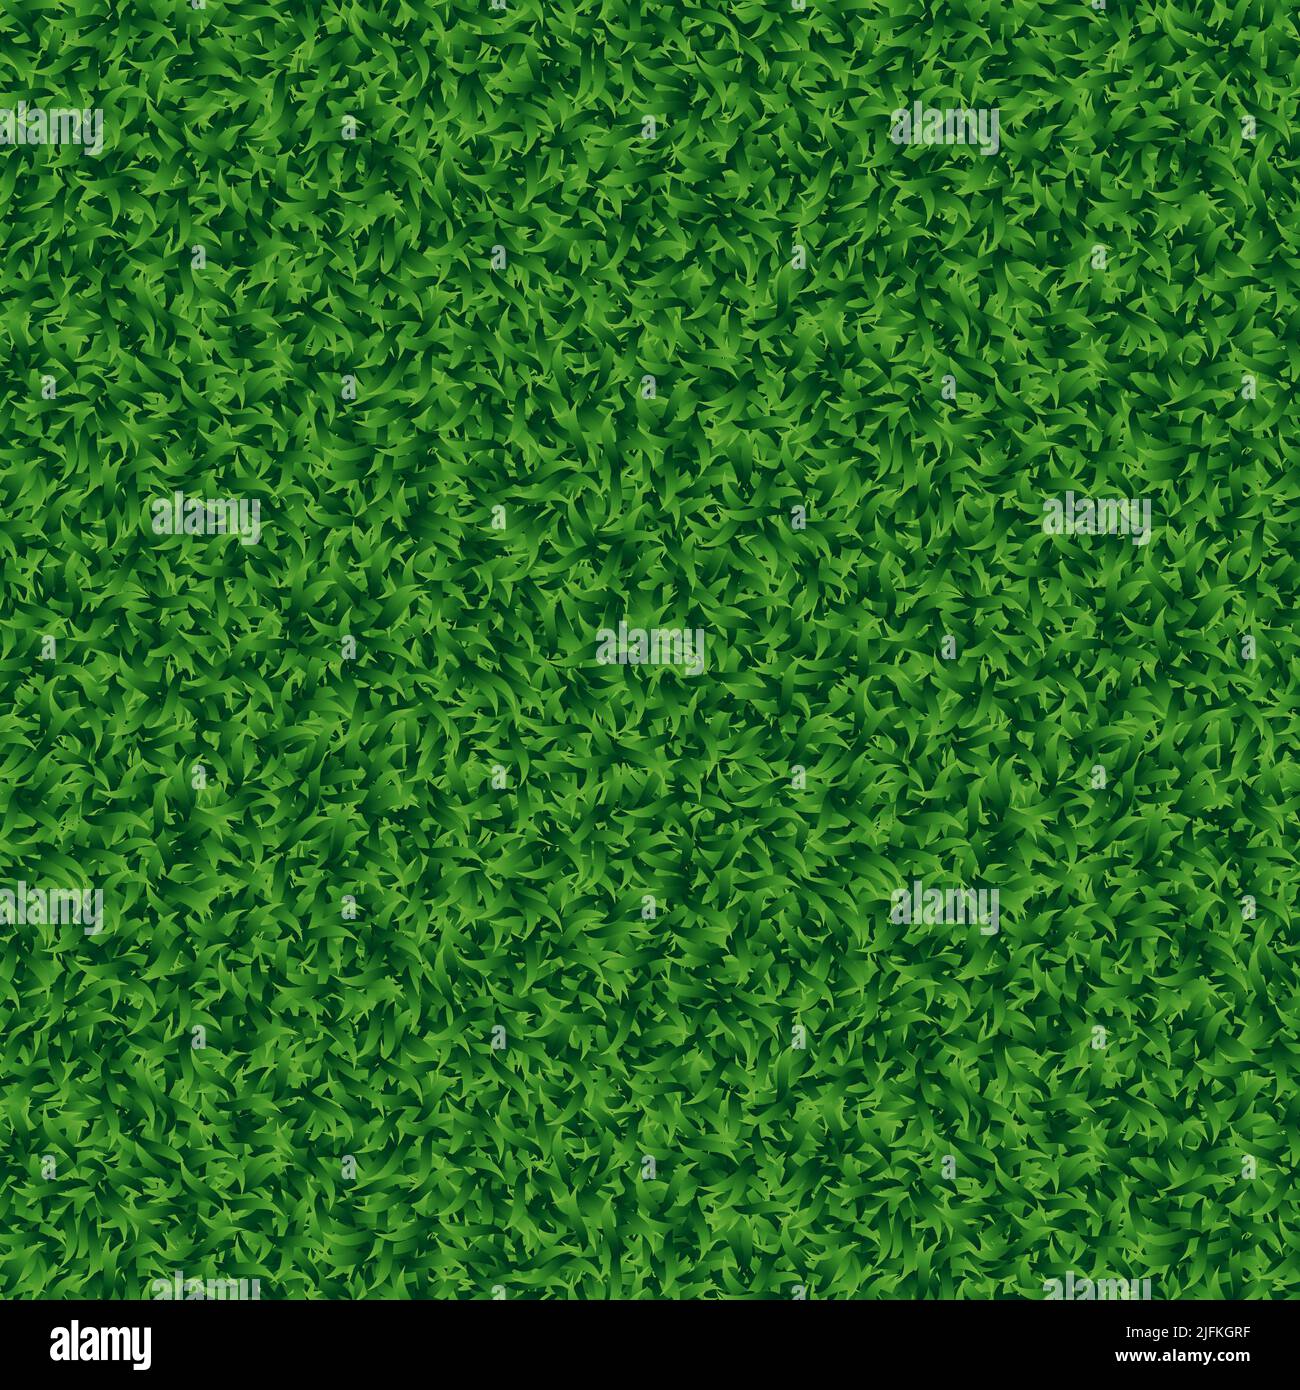 Seamless grass. Grass texture plane perpendicular. Green grass seamless texture - summer background. Vector illustration Stock Vector